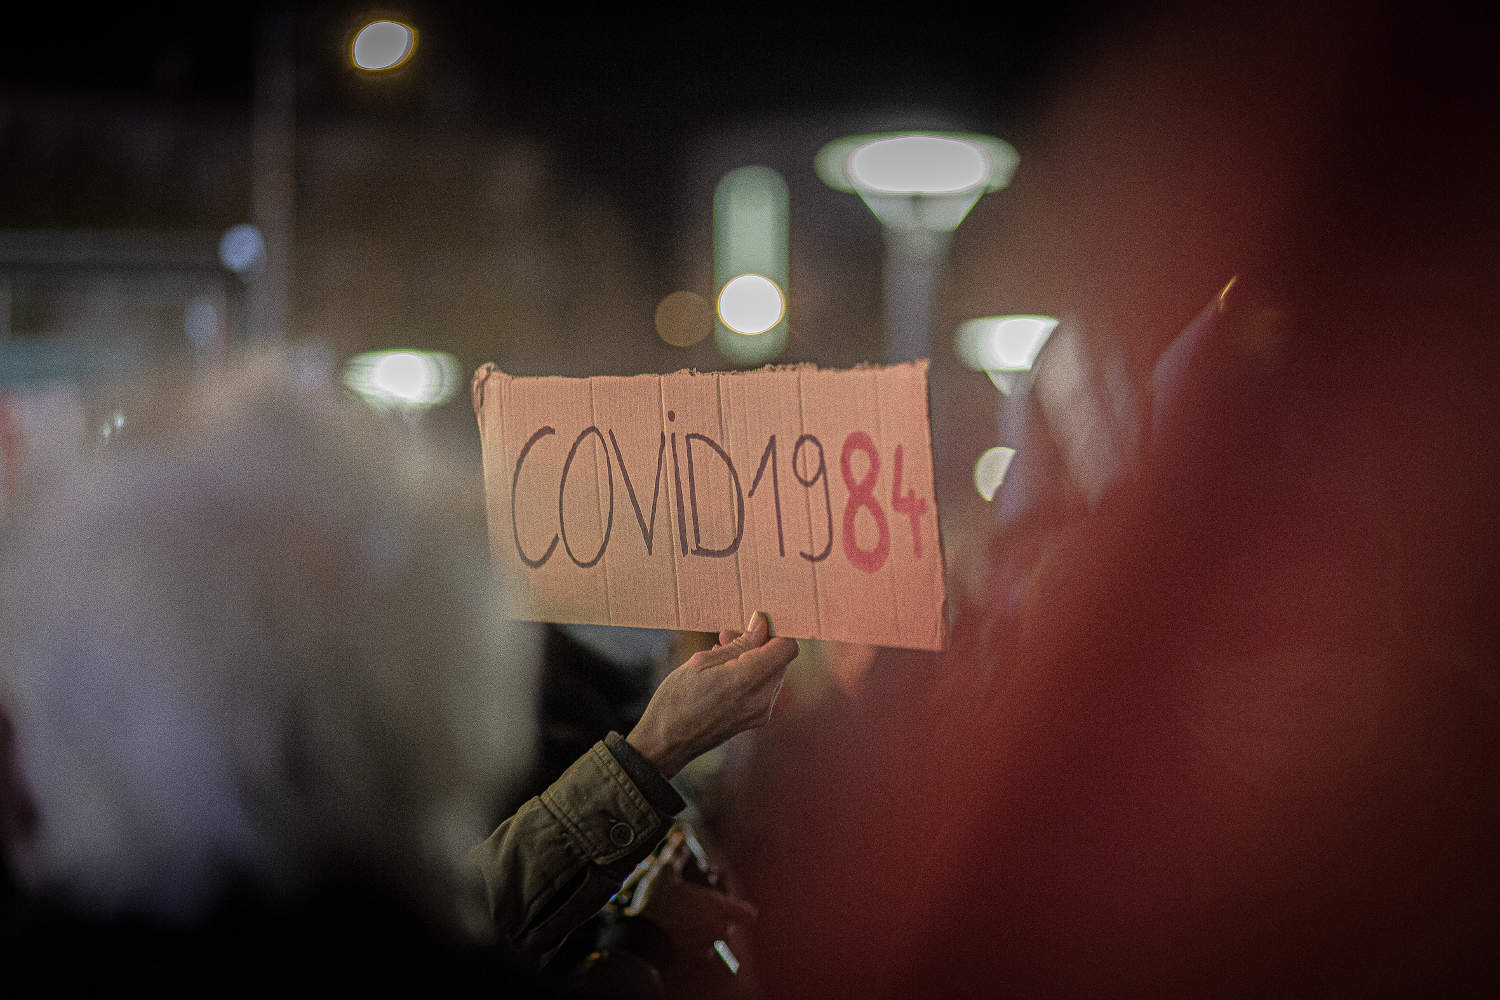 لافتة مكتوب عليها كوفيد 1984 نسبة لرواية الكاتب جورج أورويل بمسيرة الحريات المناهضة لقانون الأمن الشامل، مدينة بربينيا، فرنسا، 3 ديسمبر 2020. رويترز، إدهير باها\هانز لوكاس.